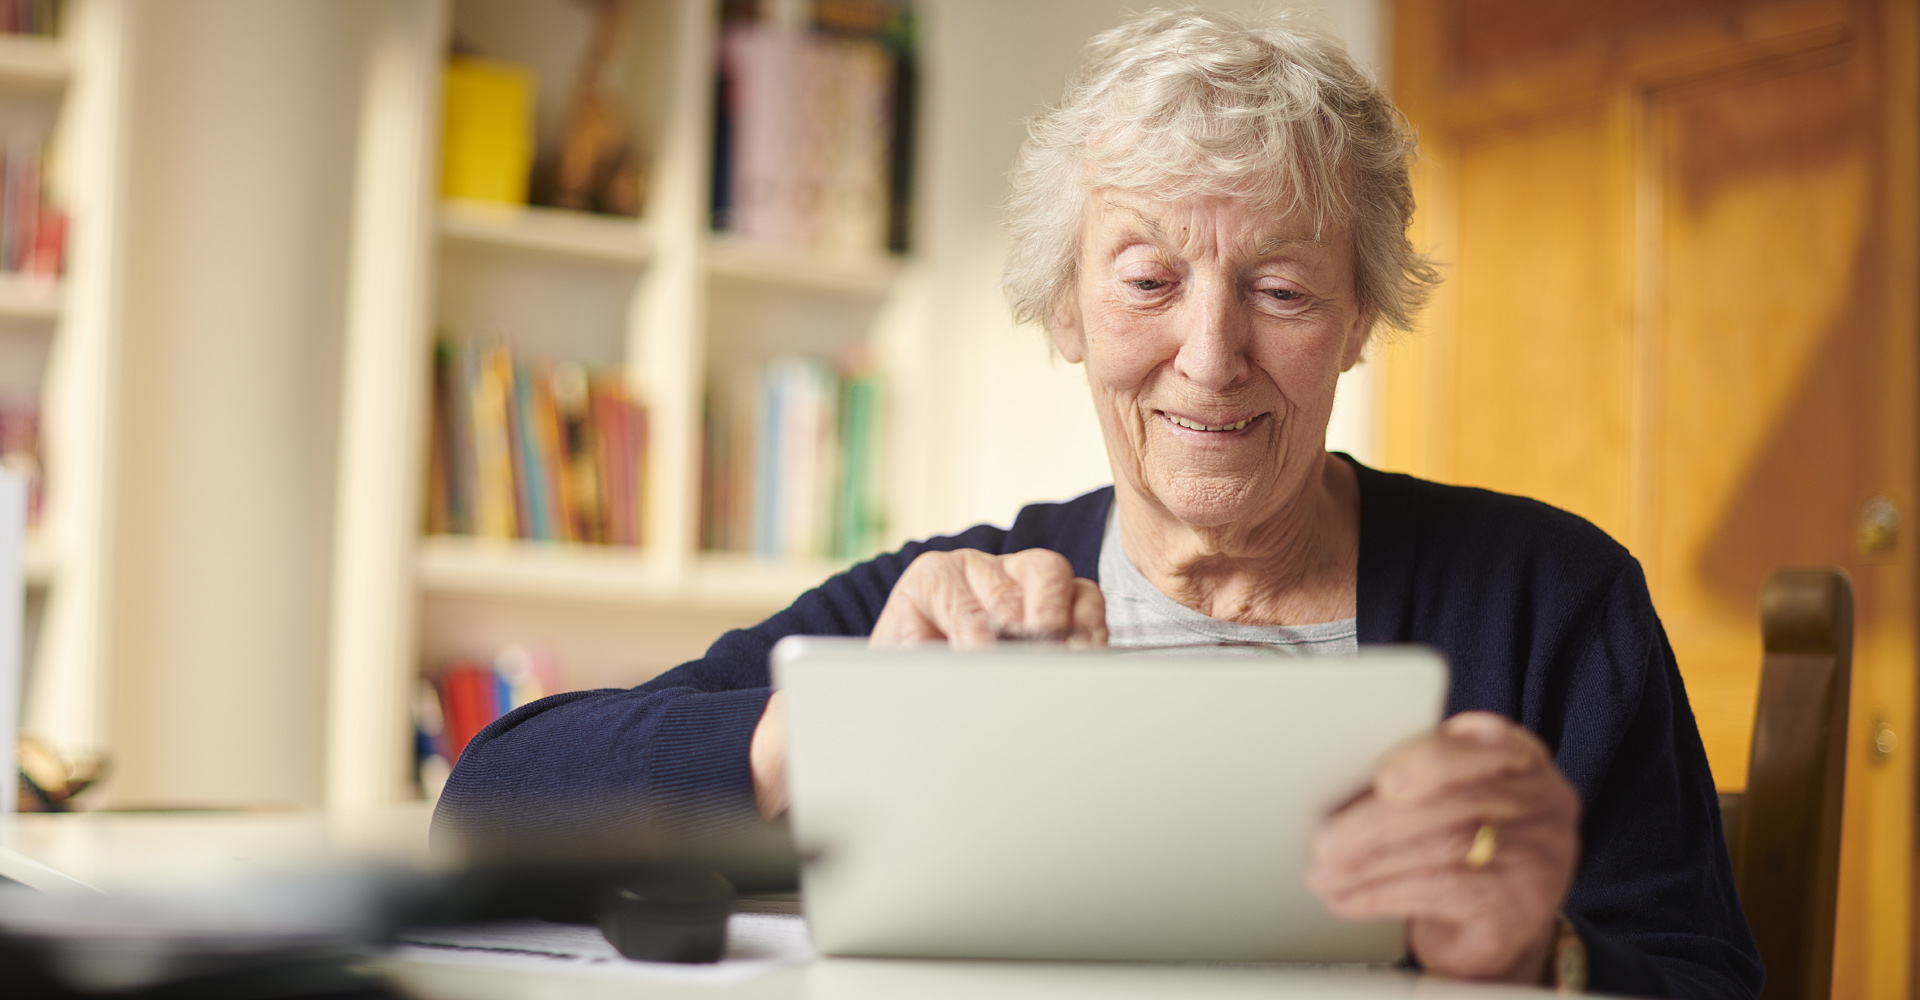 Elders And Digital Burden Fears | Avast